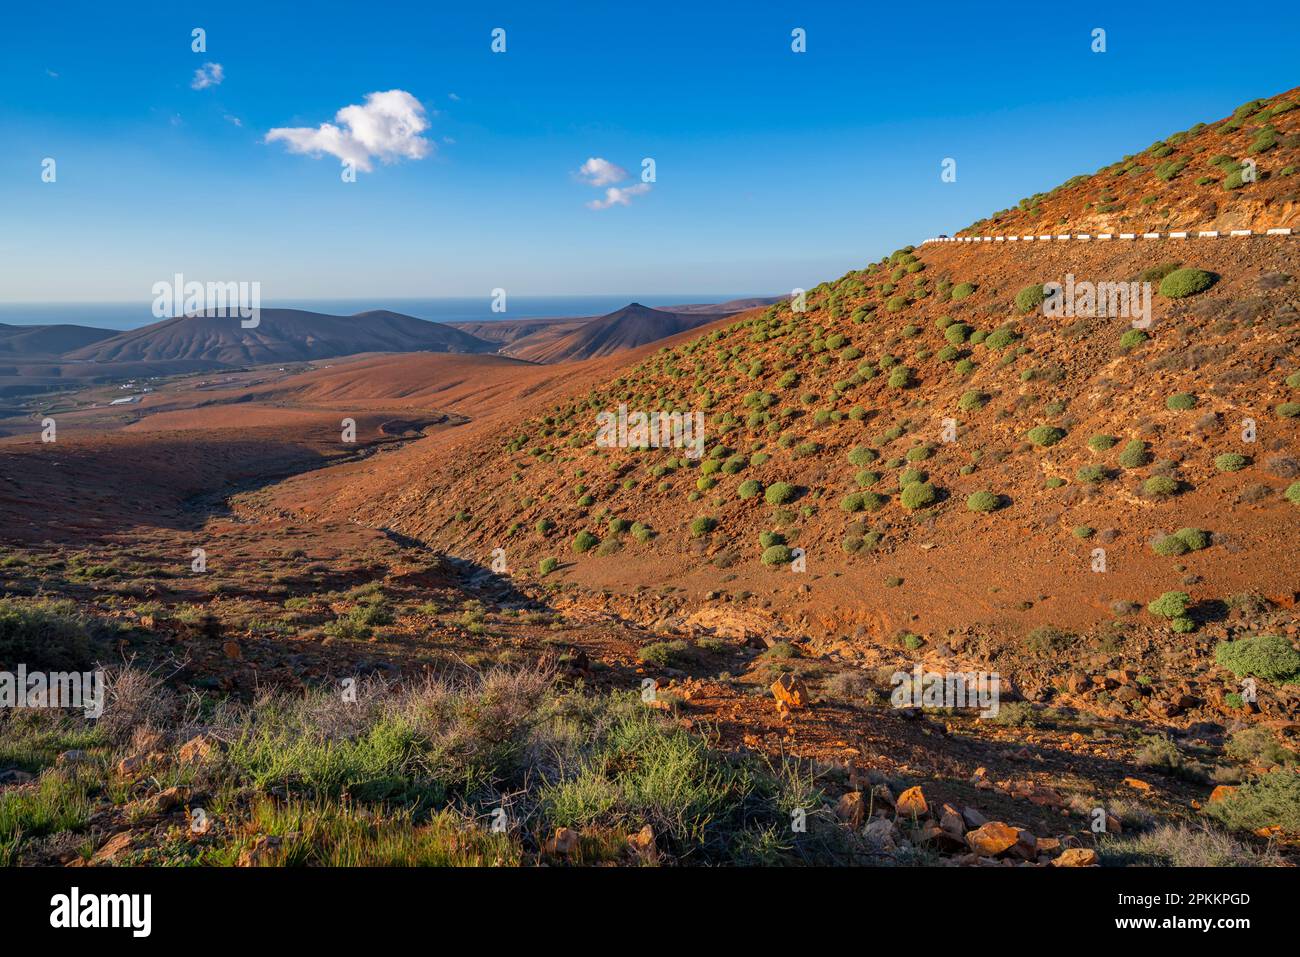 Vue sur le paysage depuis près du point de vue Mirador de Las Penitas, Betancuria, Fuerteventura, îles Canaries, Espagne, Atlantique, Europe Banque D'Images